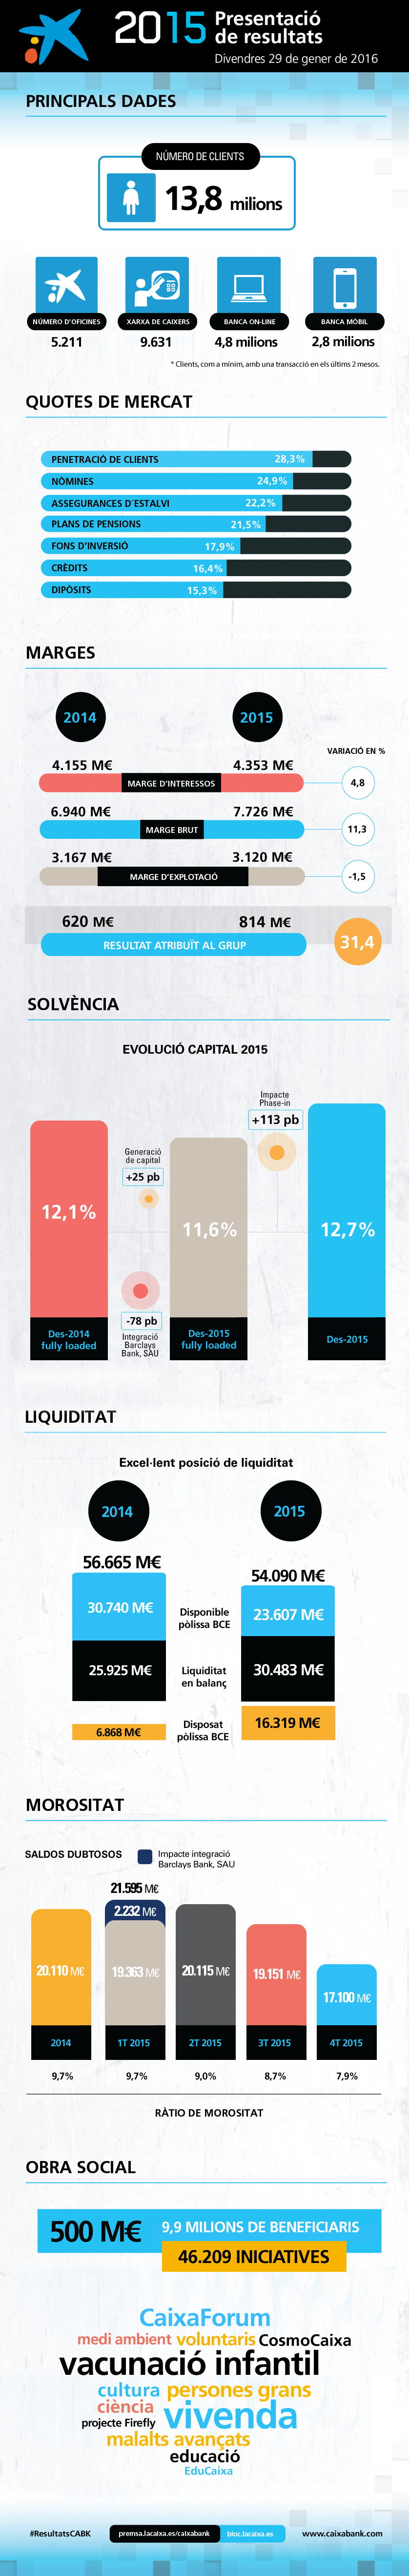 infografia de resultats CaixaBank 2015